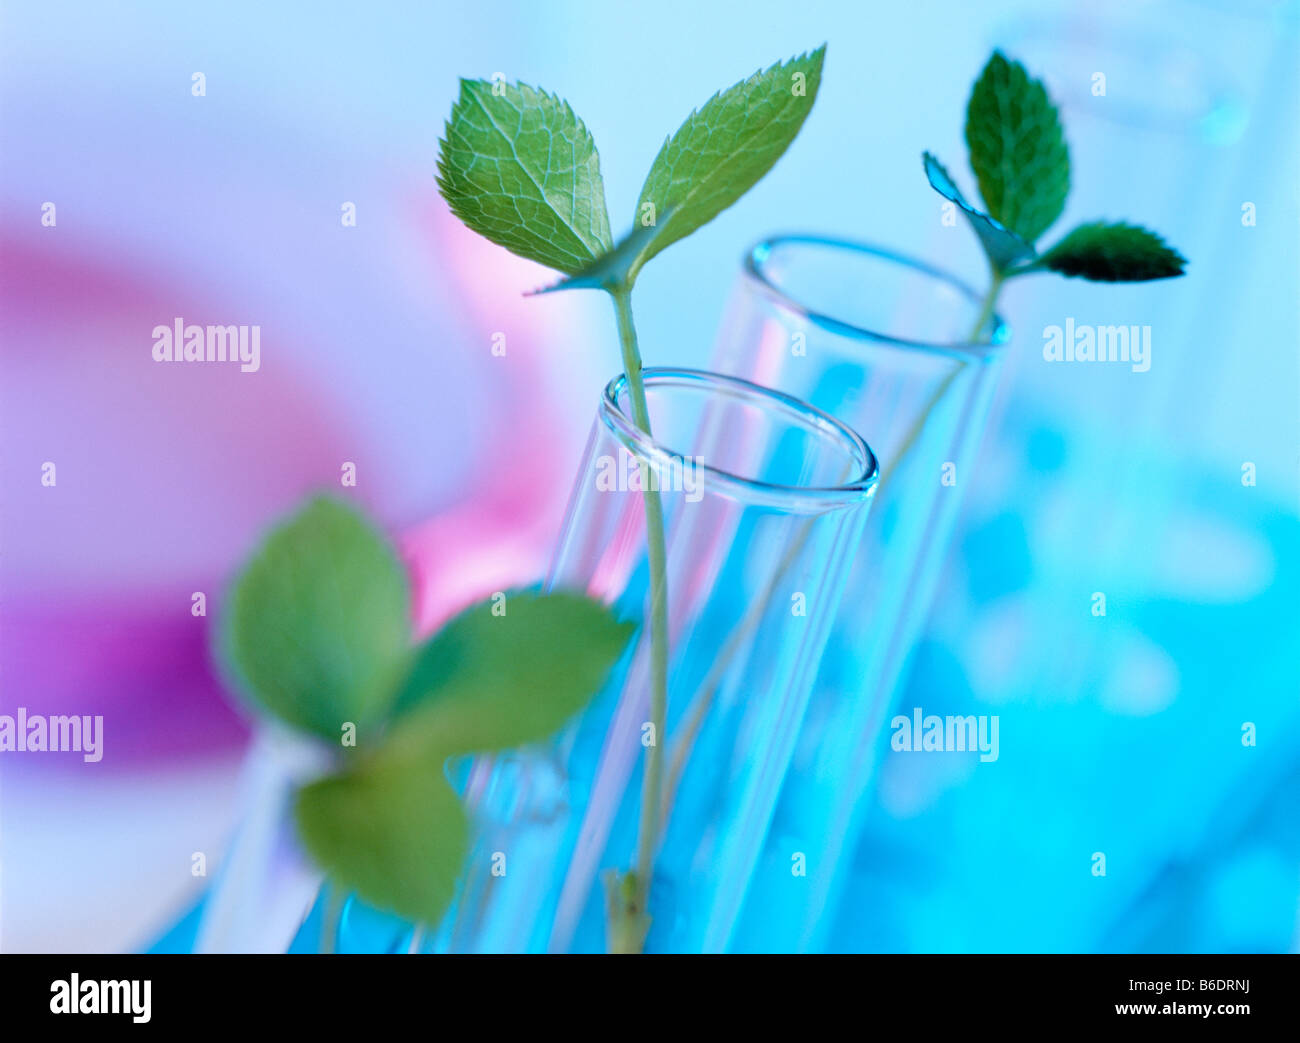 Pflanzen-Biotechnologie. Konzeptbild von Pflanzen im Reagenzglas  Stockfotografie - Alamy